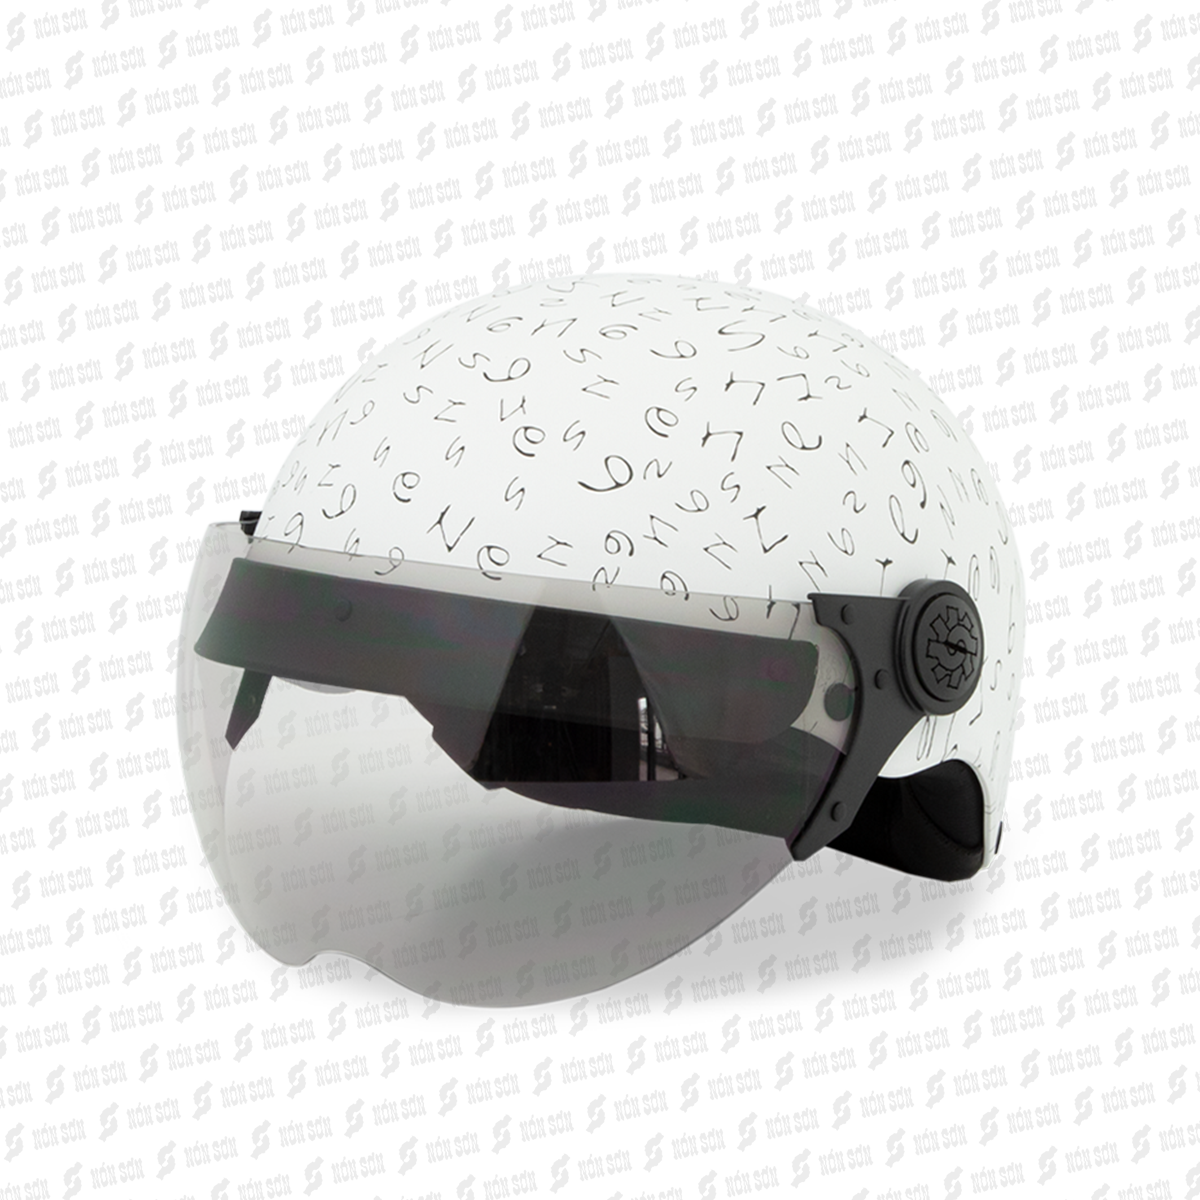 Mũ bảo hiểm có kính NÓN SƠN chính hãng KP-TR083